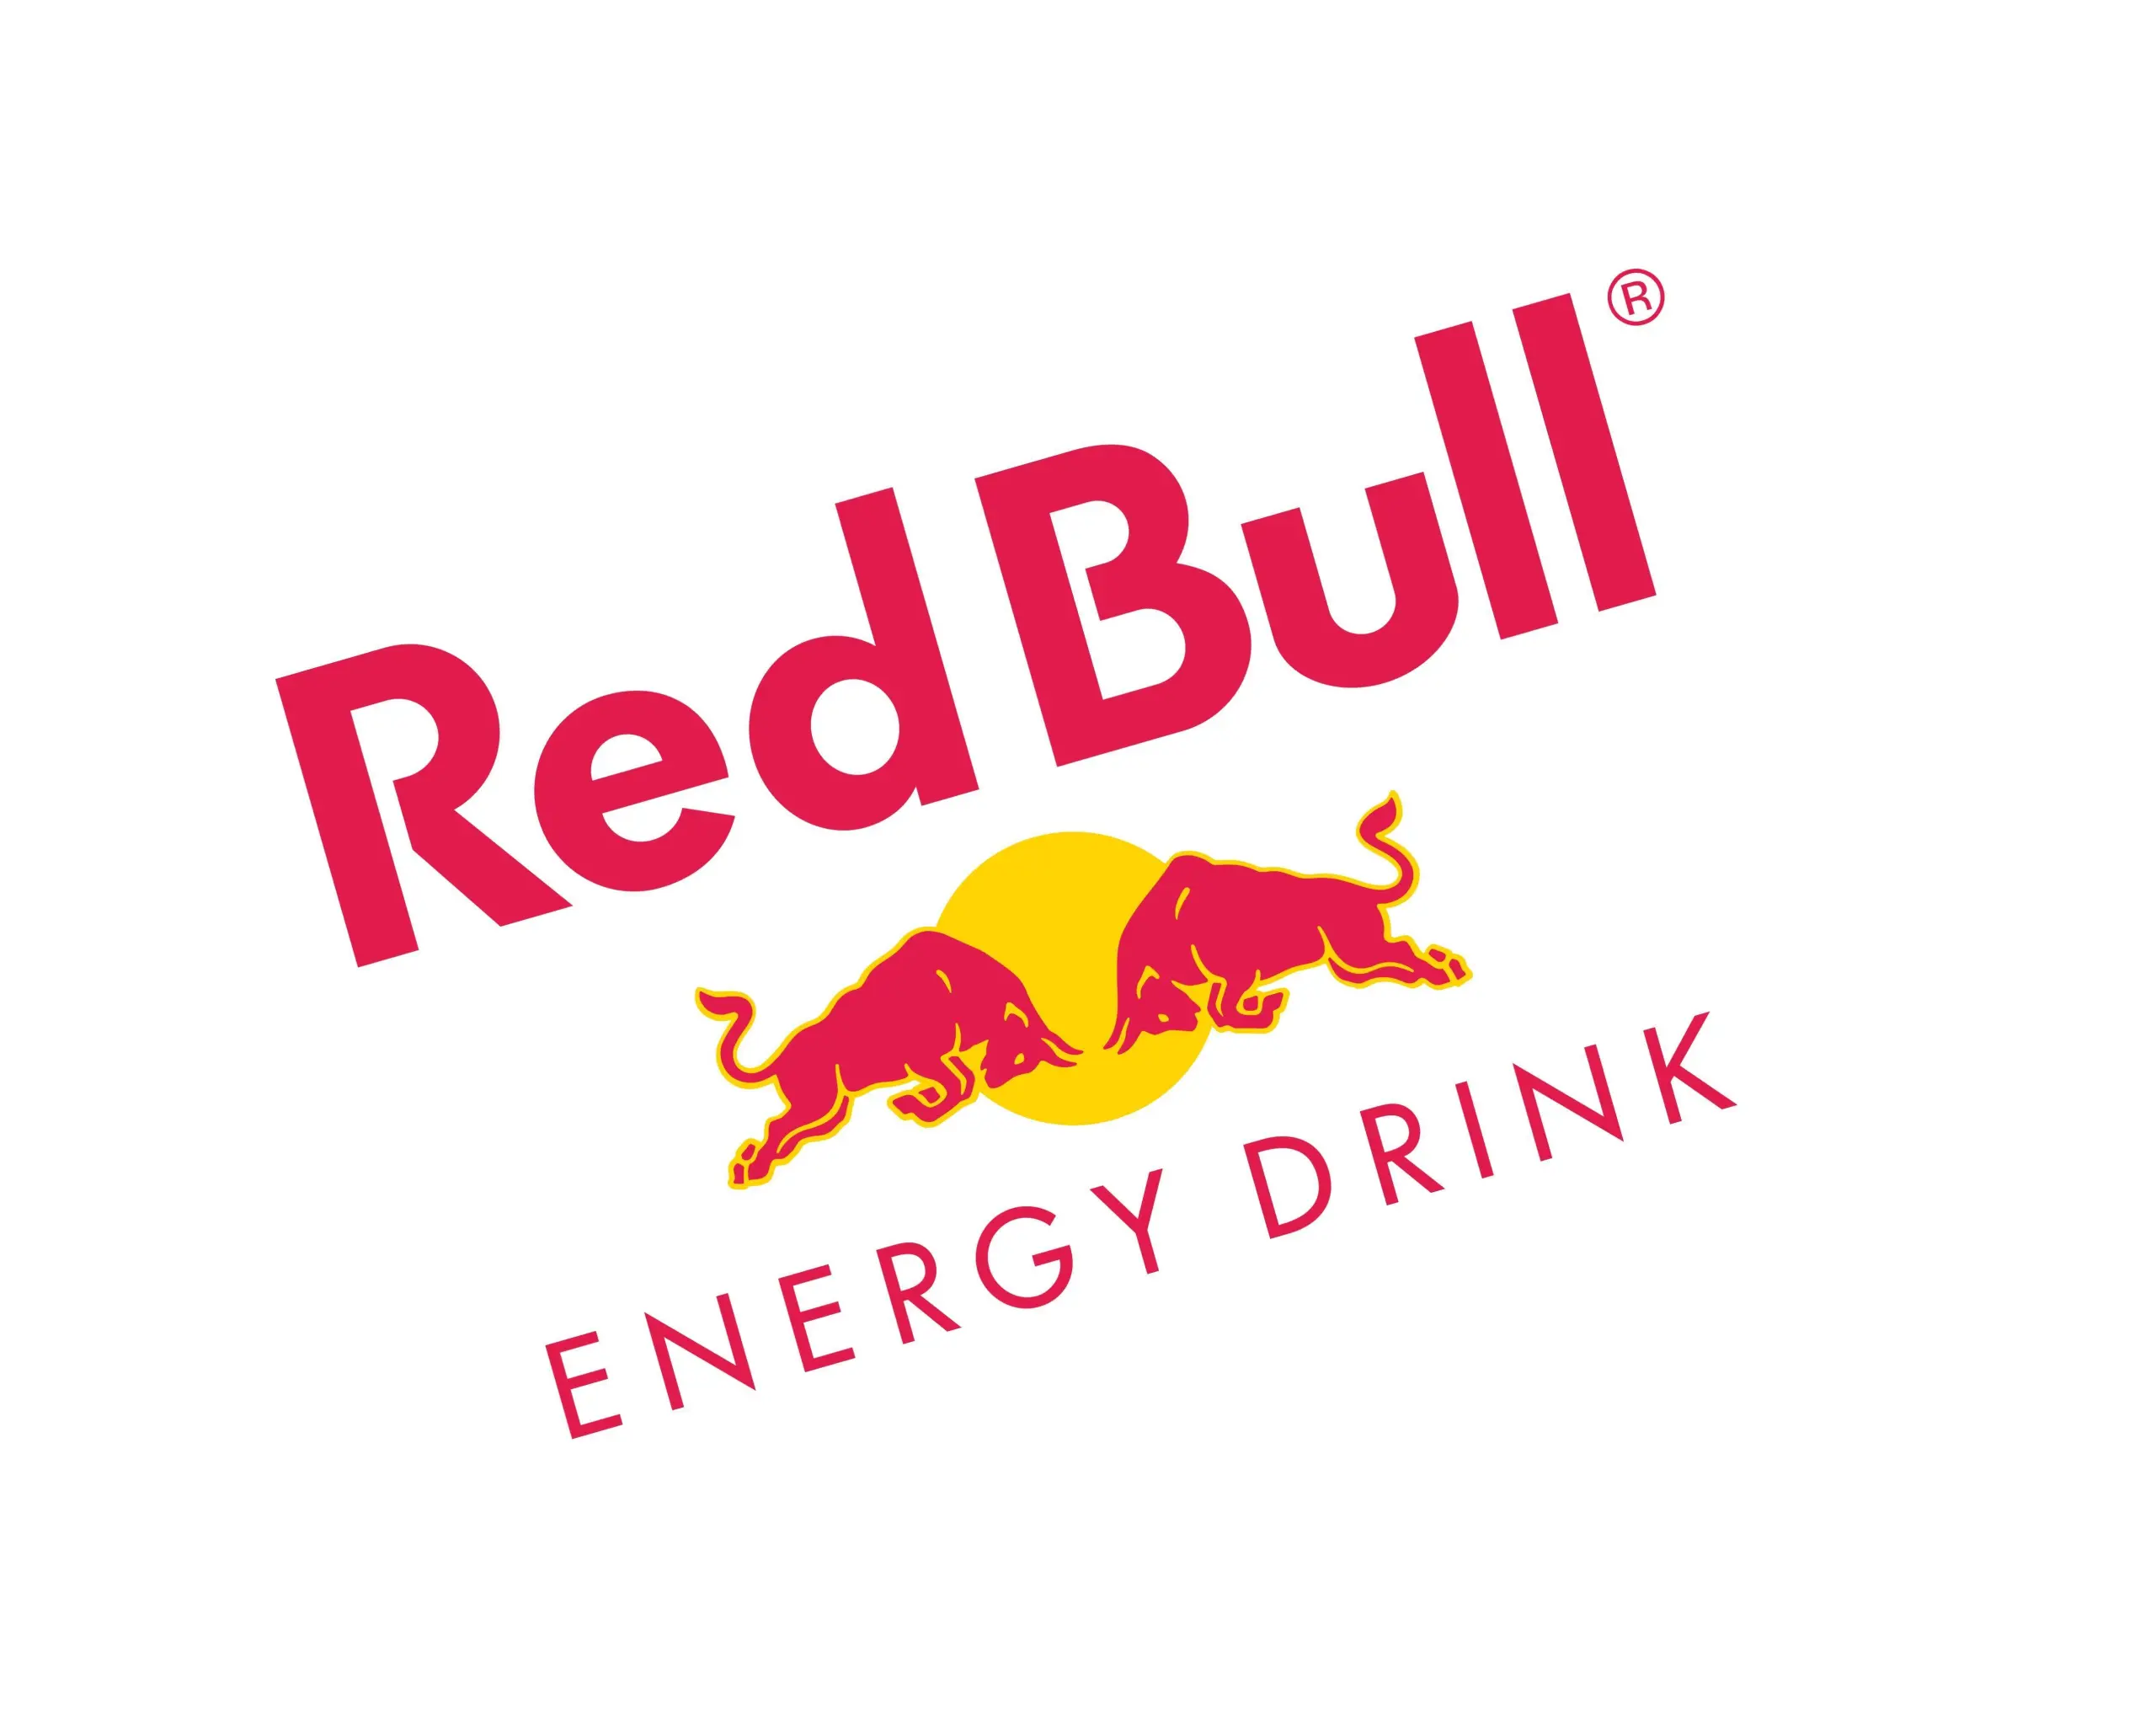 Red Bull: Der nächste Akt